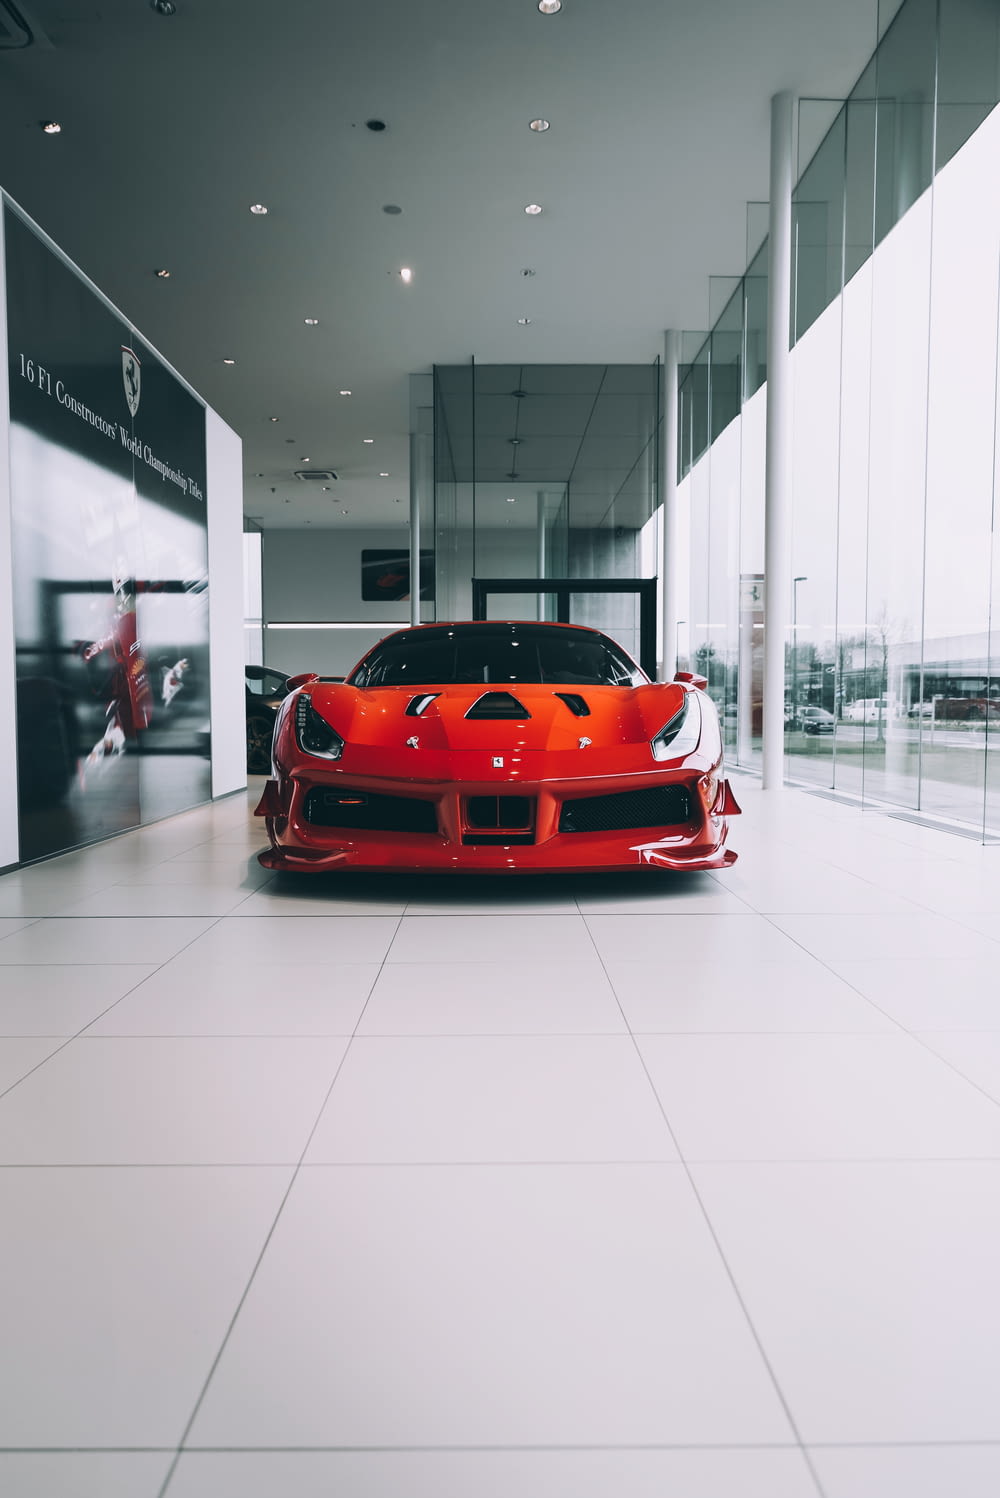 Coche Ferrari rojo en una habitación blanca